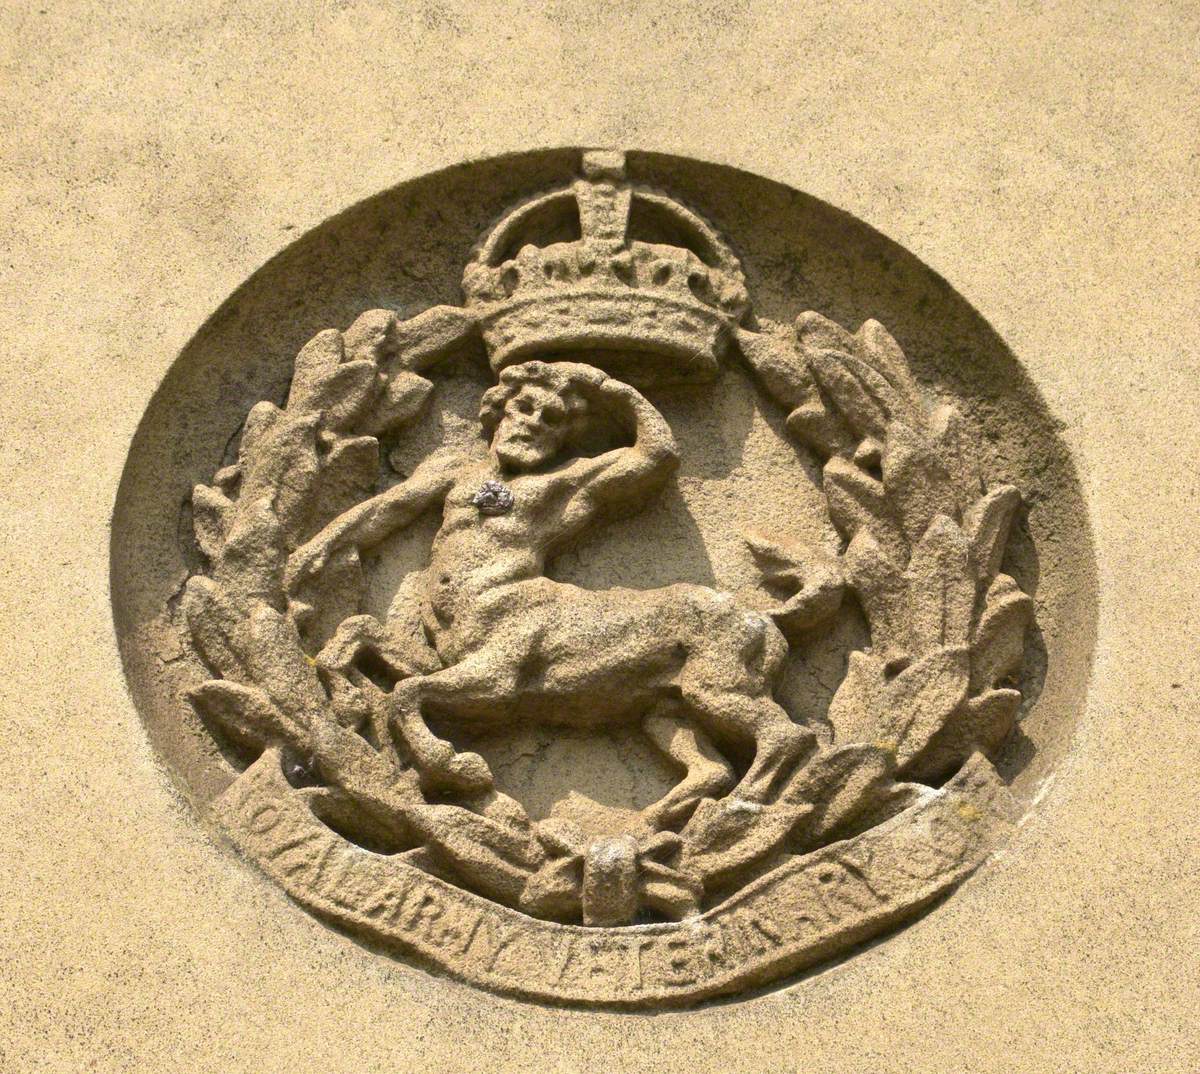 County War Memorial